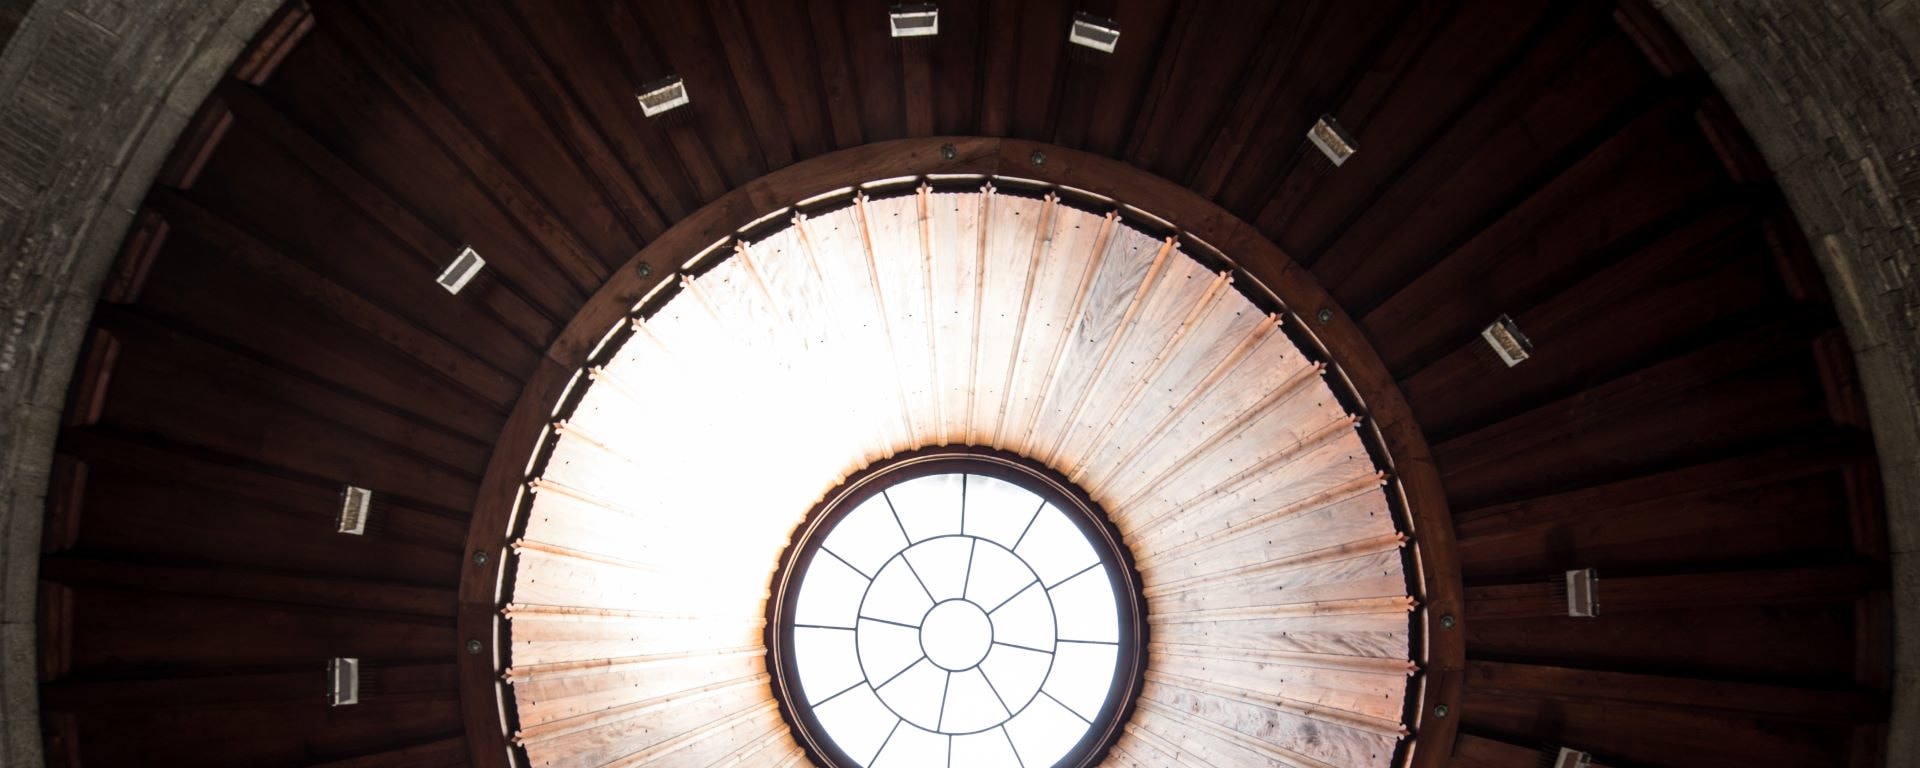 Gros plan architectural d'une lucarne circulaire au milieu d'un plafond en dôme en bois avec un design géométrique